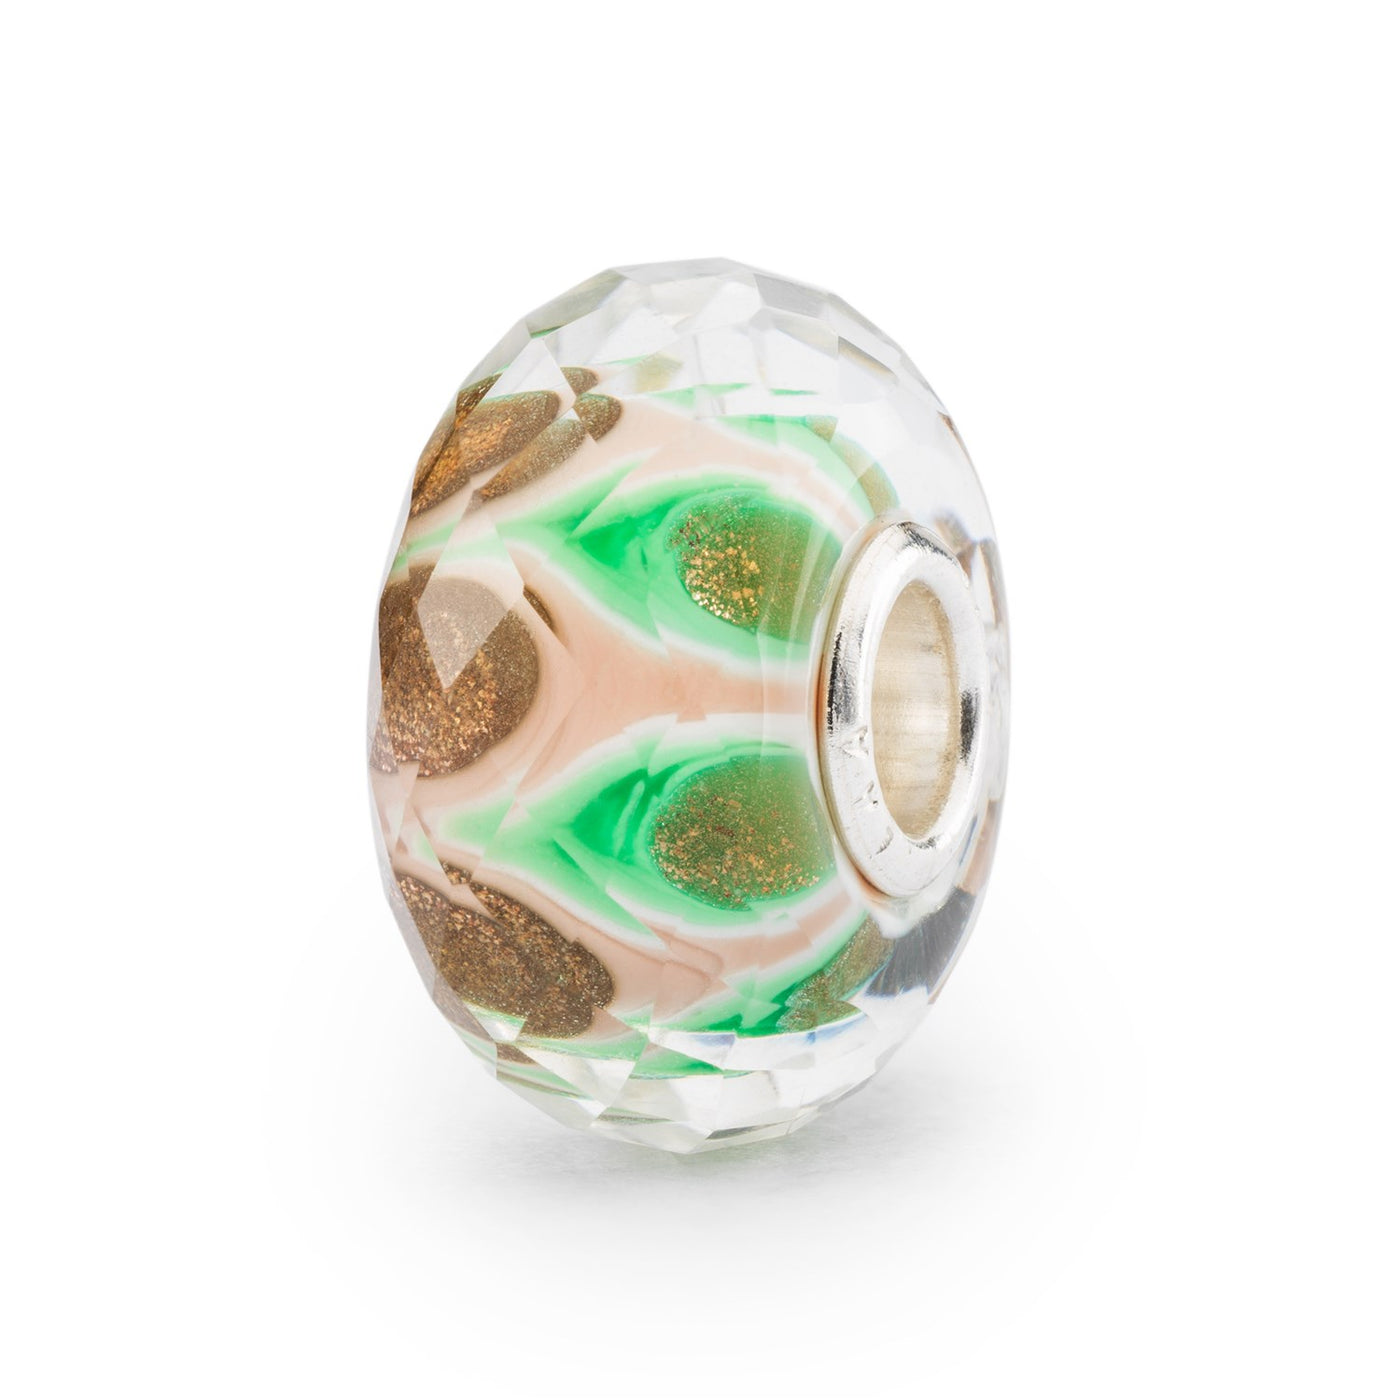 Fortryllende facetteret glaskugle med en blanding af grønne og blege lyserøde nuancer, inspireret af et mandalamønster.